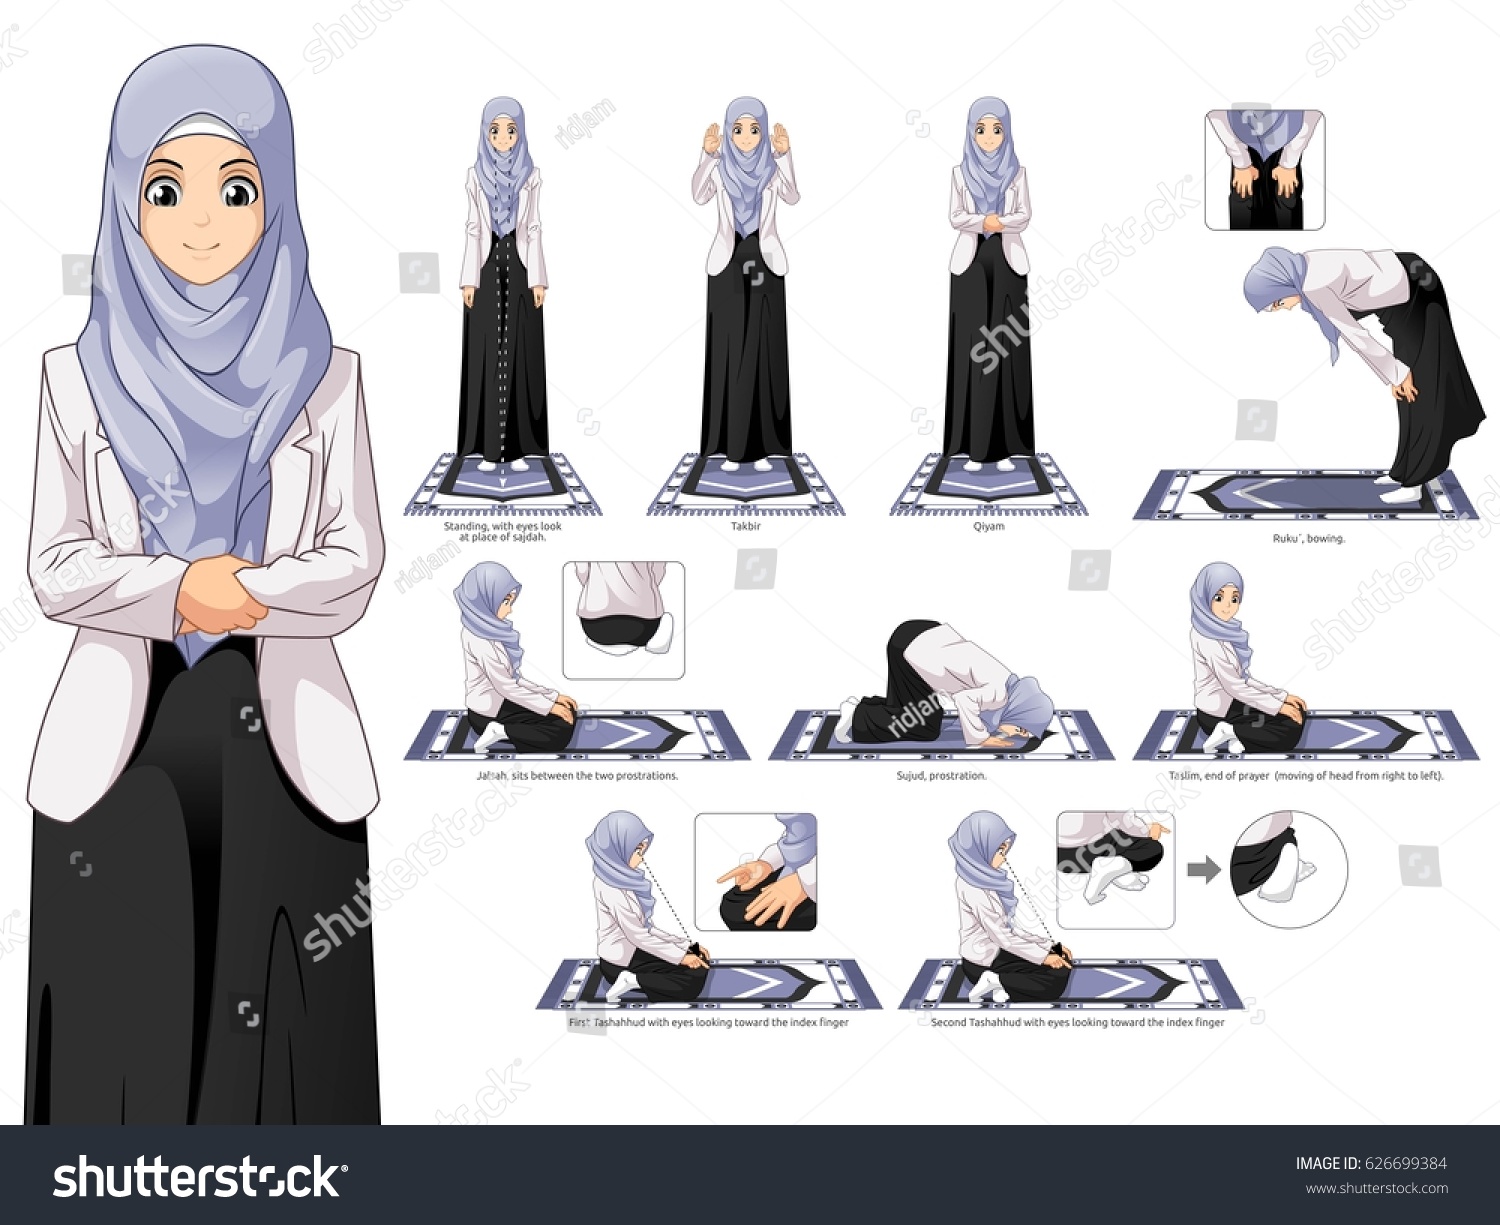 Таслим в исламе. Движения намаза для женщин. Намаз для женщин. Намаз для денщи. Положение рук в намазе у женщин.